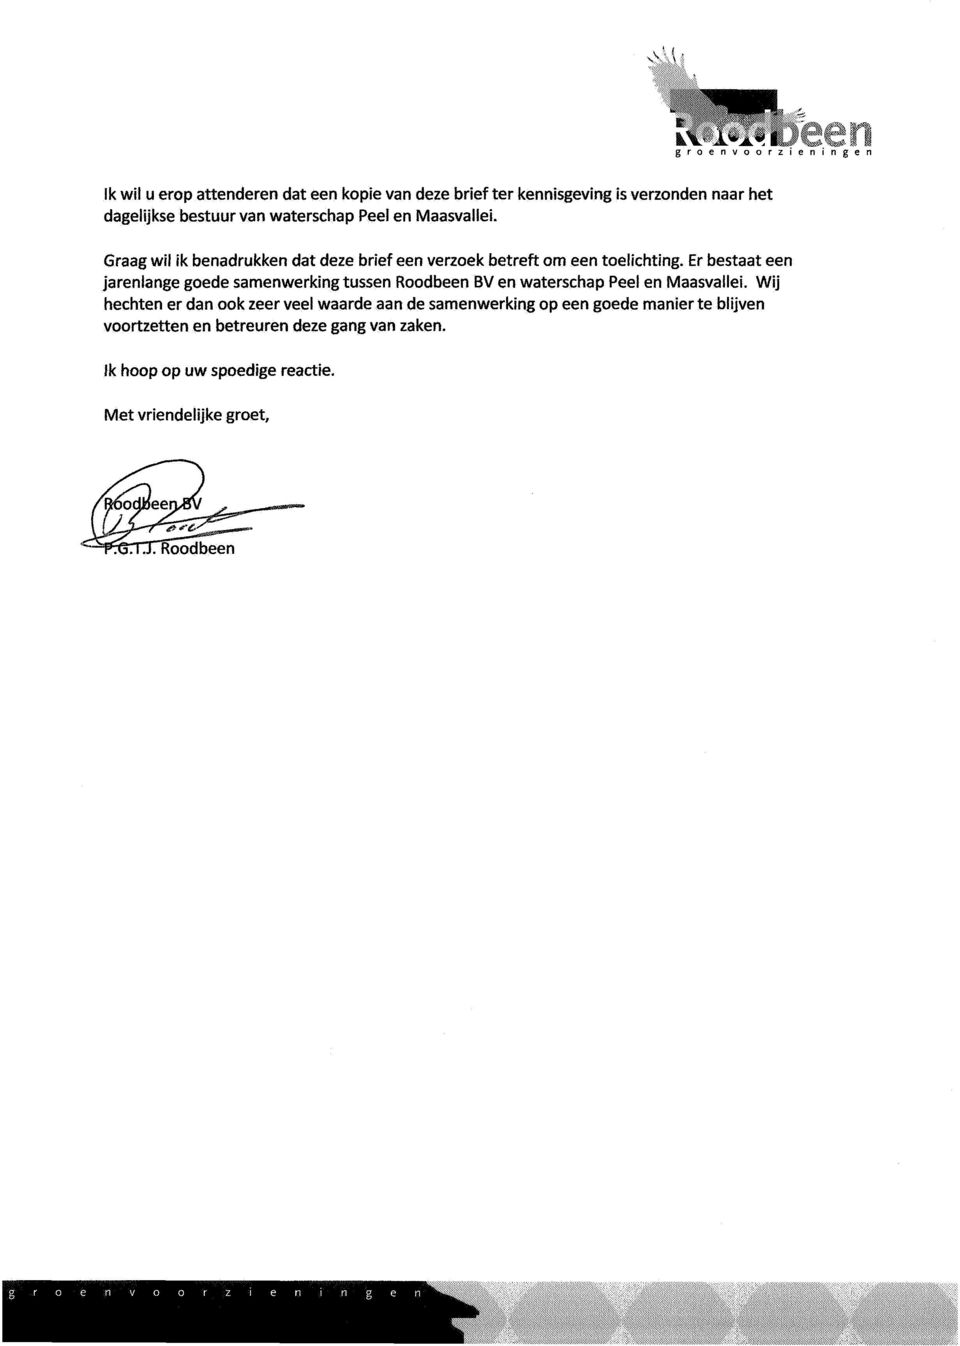 bestuur van waterschap Peel en Maasvallei. Graag wil ik benadrukken dat deze brief een verzoek betreft om een toelichting.